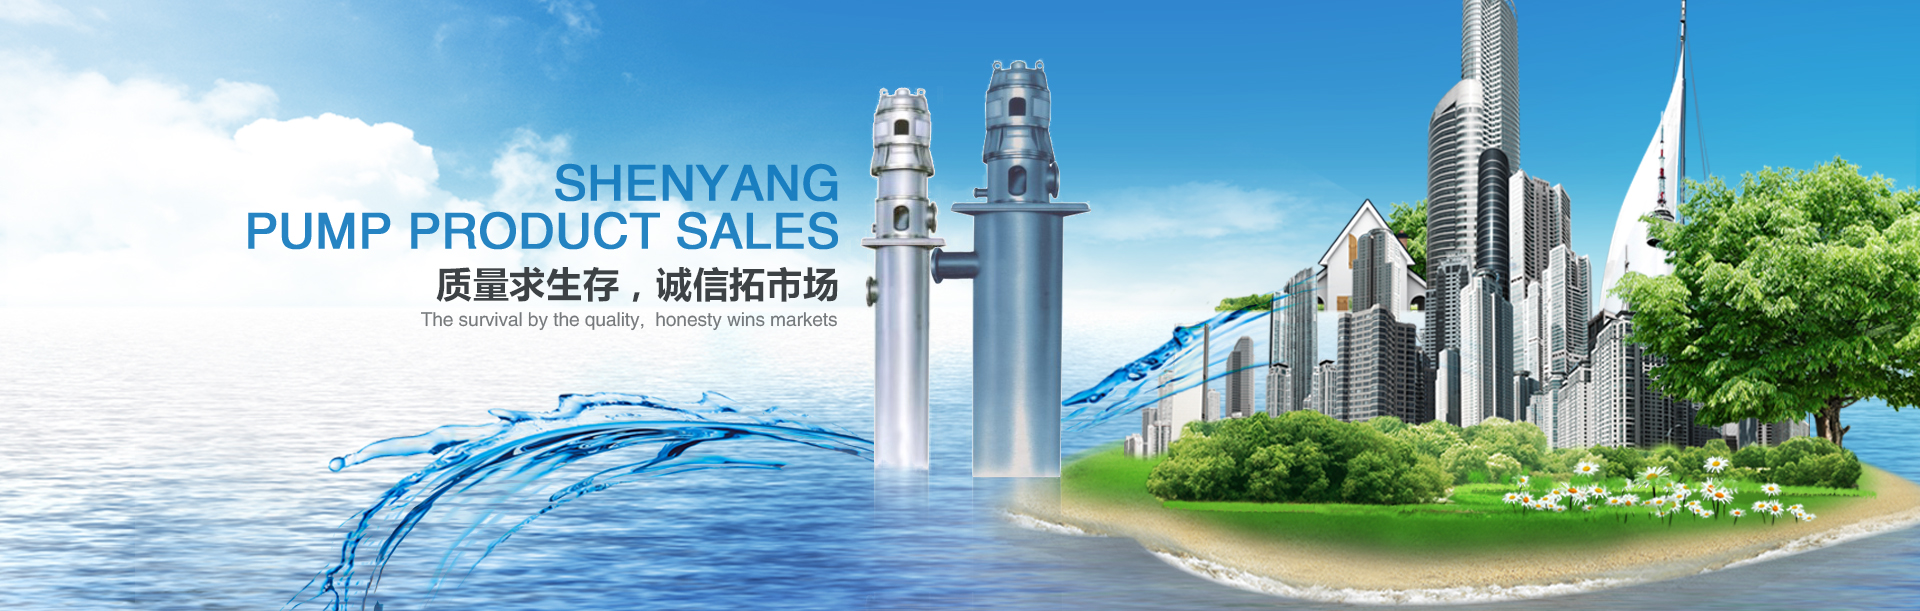 沈陽水泵產品銷售有限公司